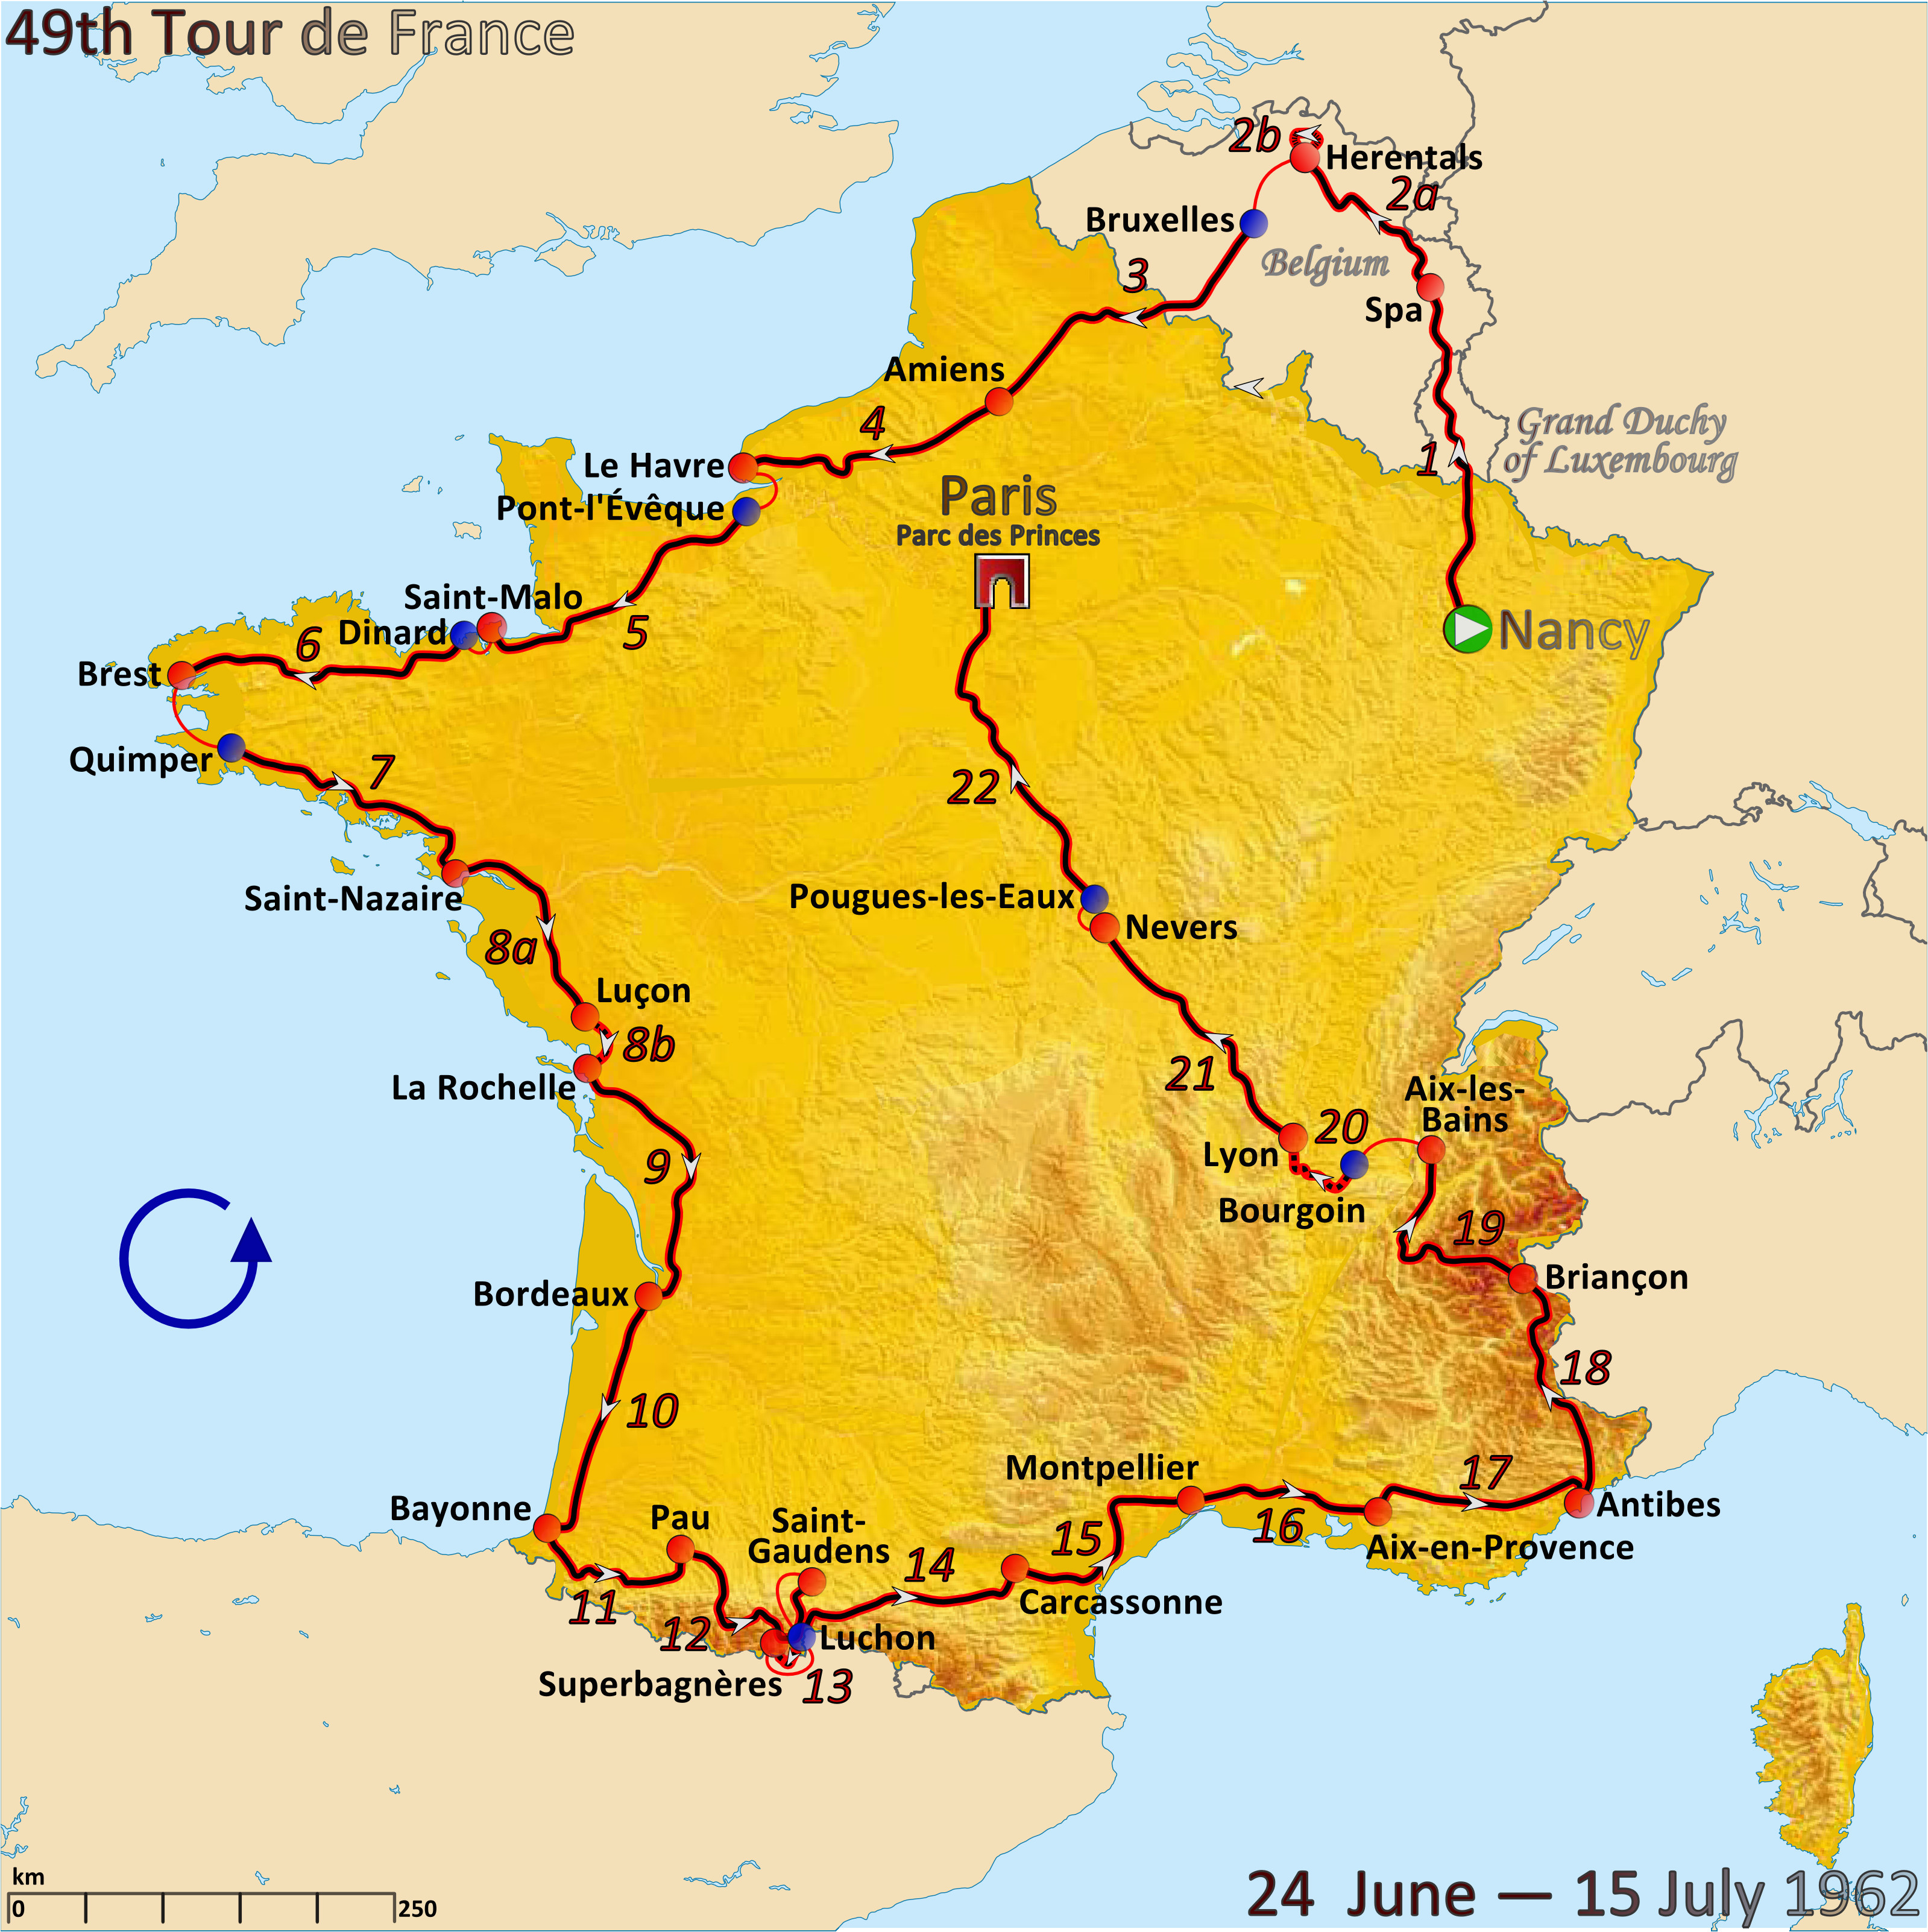 tour de france on a map